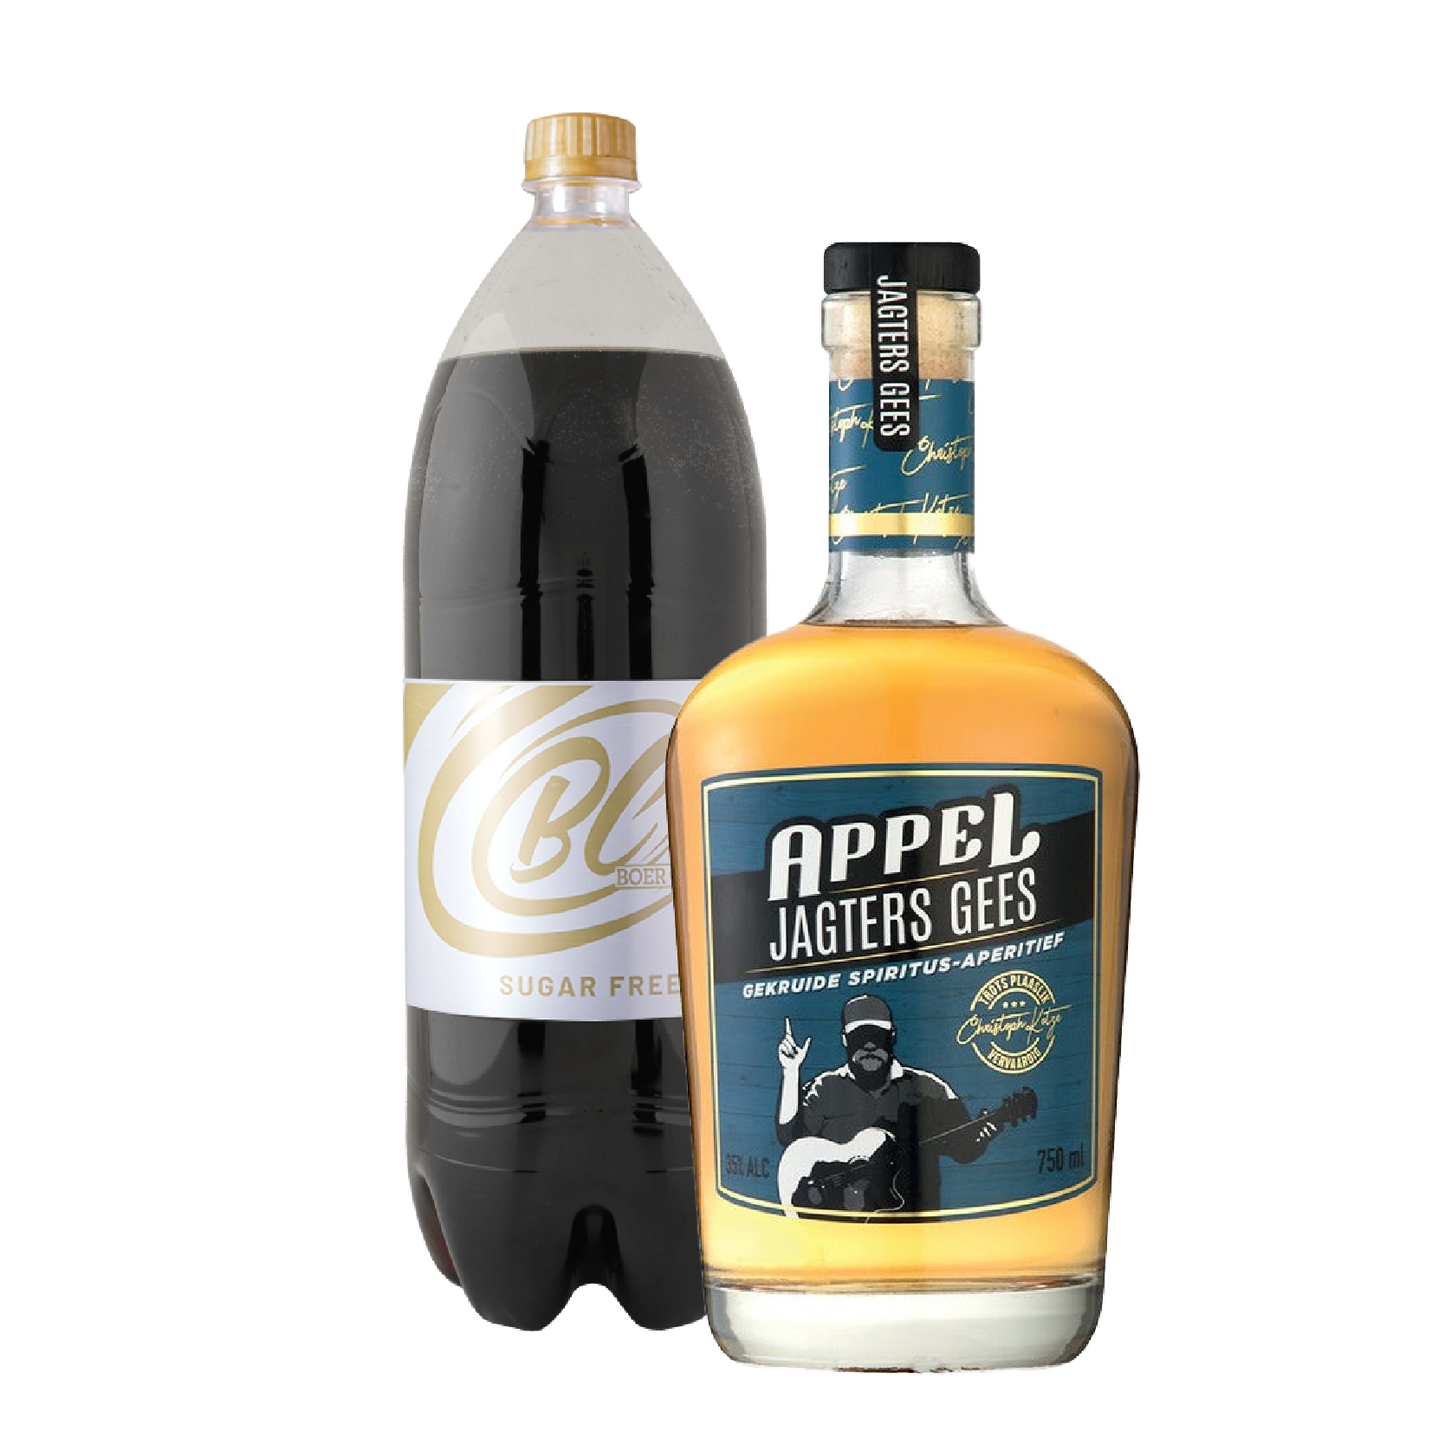 Appel Jagters Gees Spiced Rum 750ml & Boer Cola Sugar Free 2L